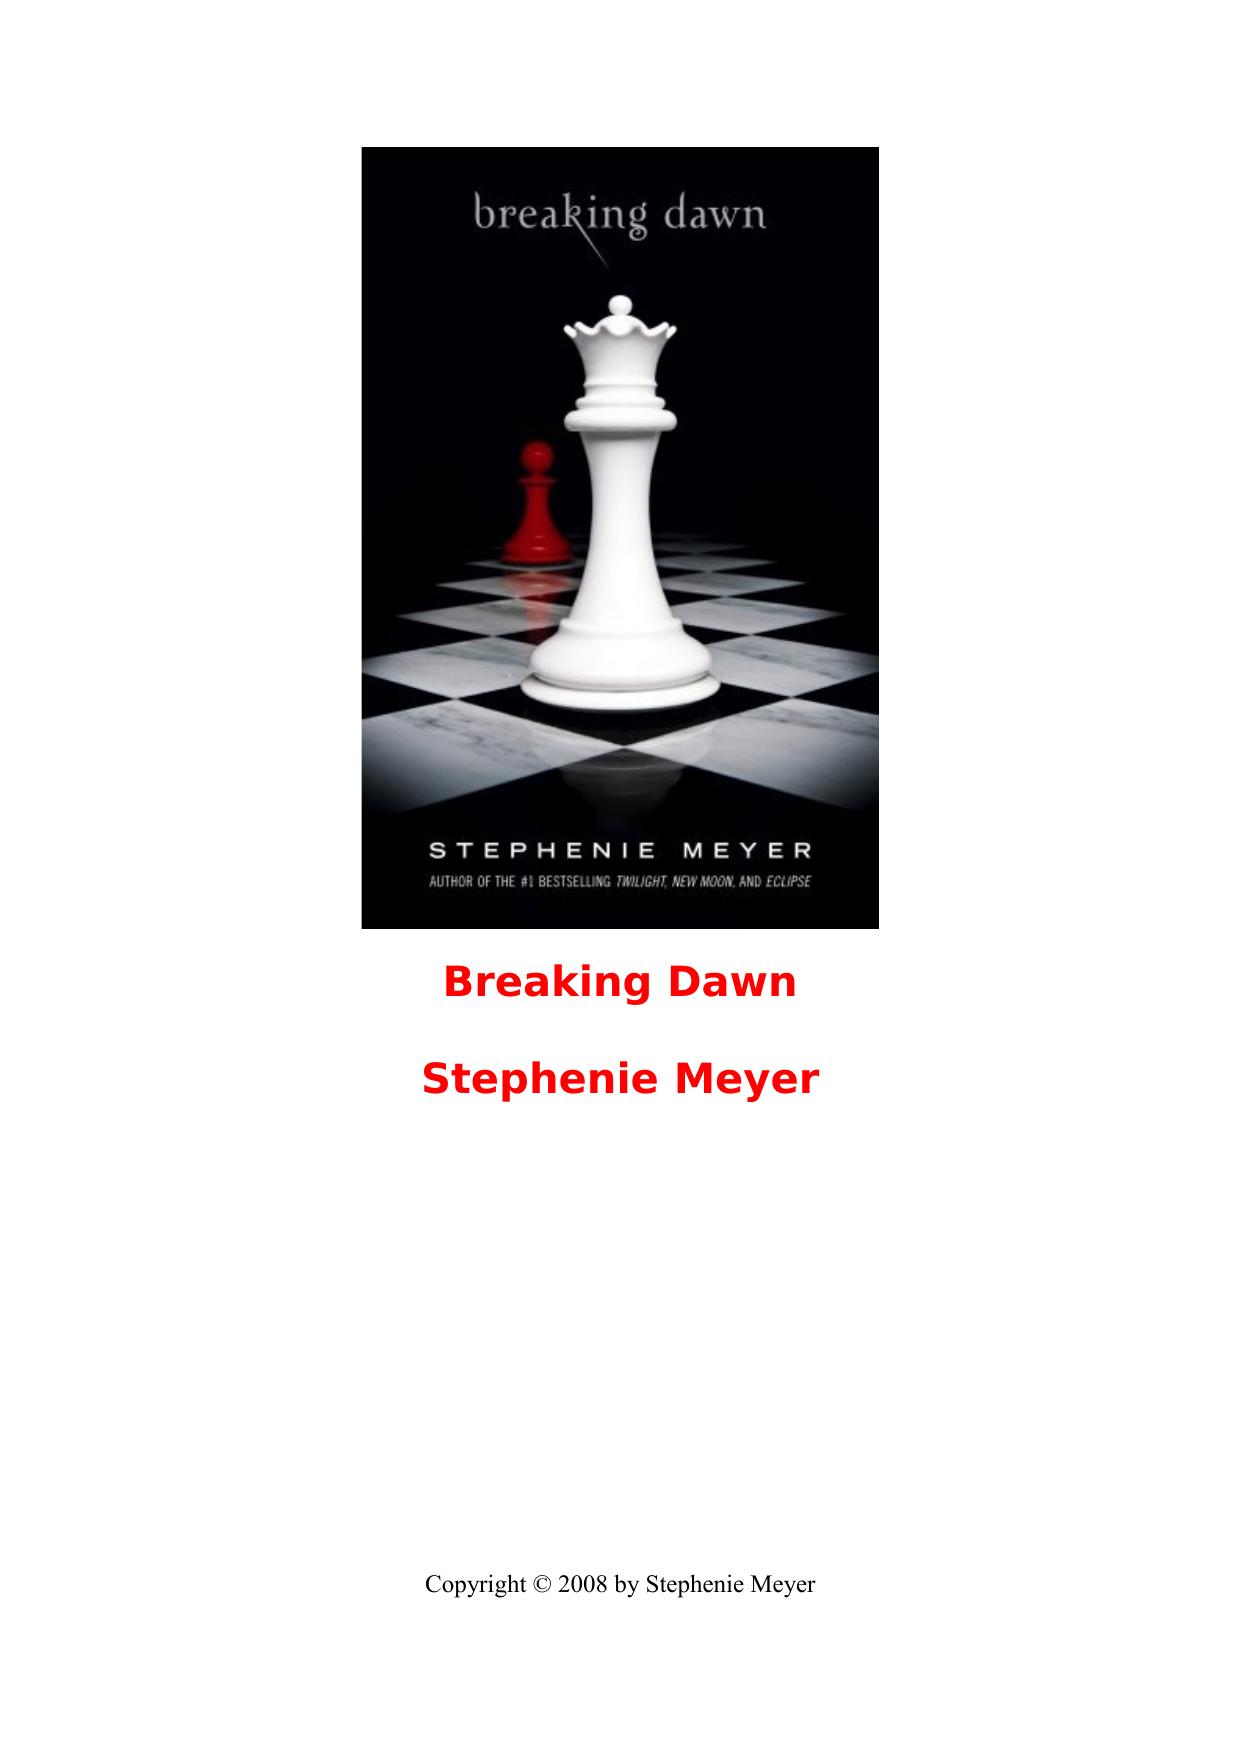 Stephenie Meyer - Book 4